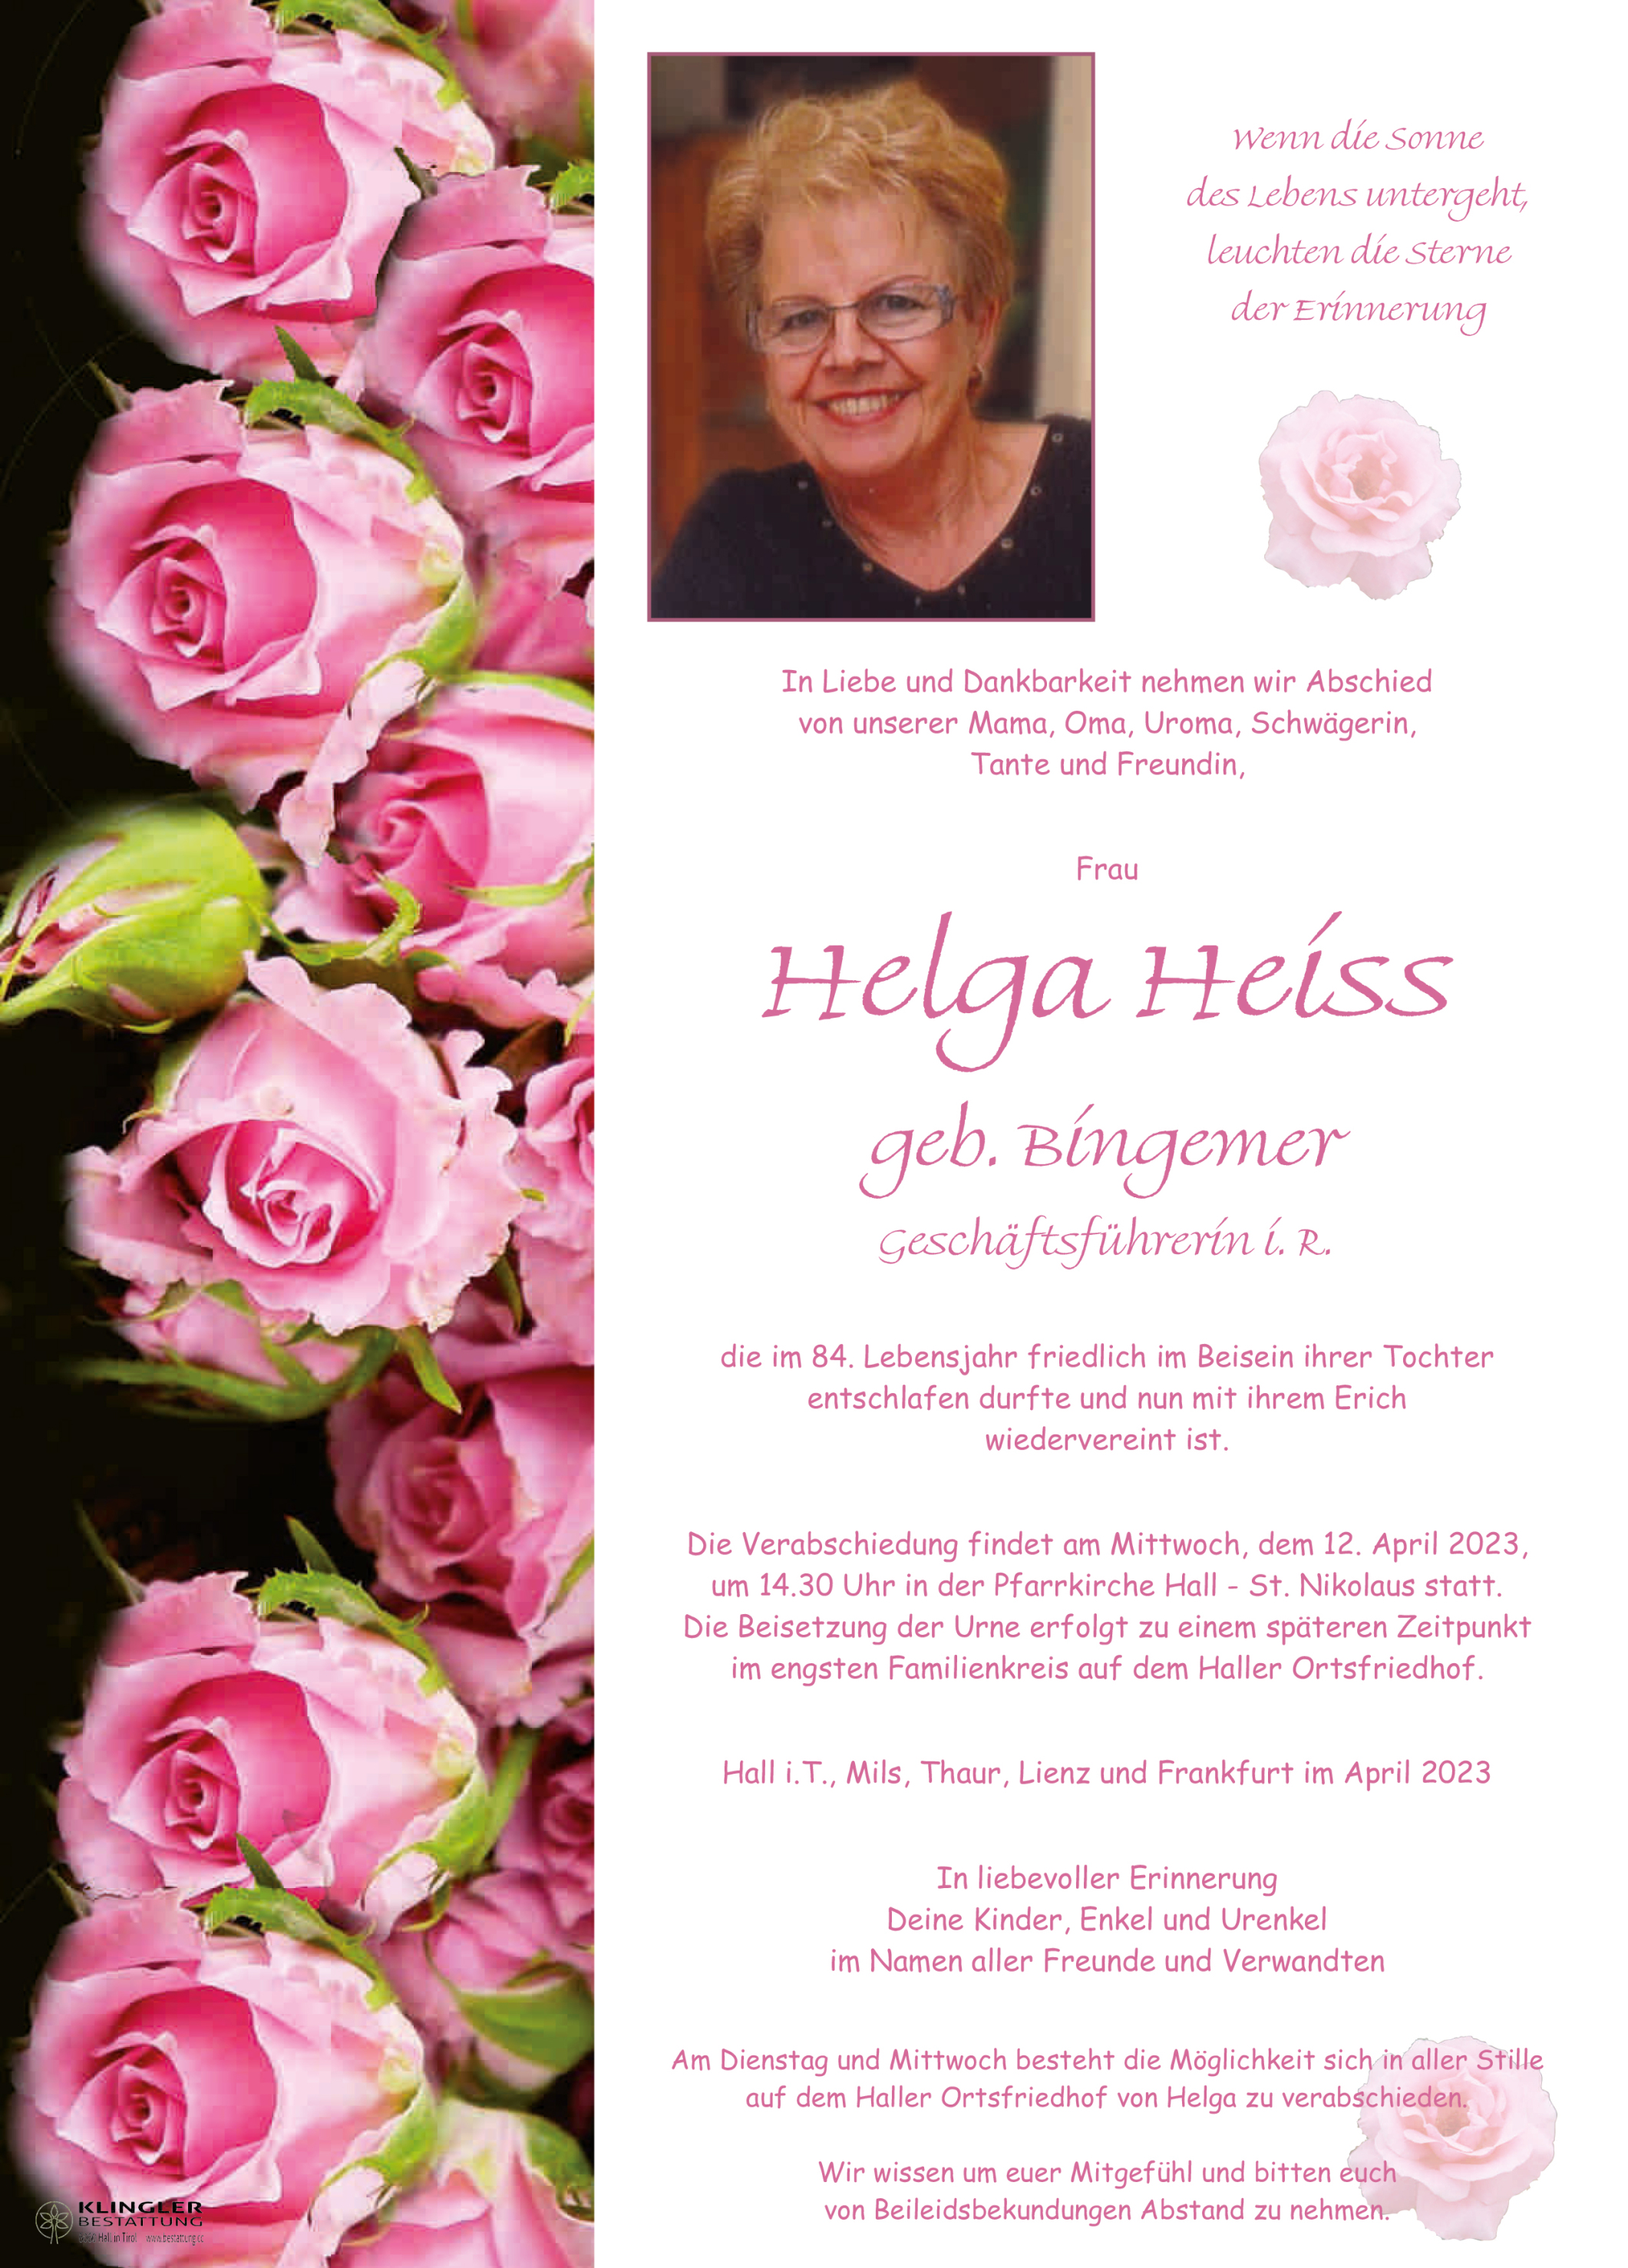 Heiss Helga